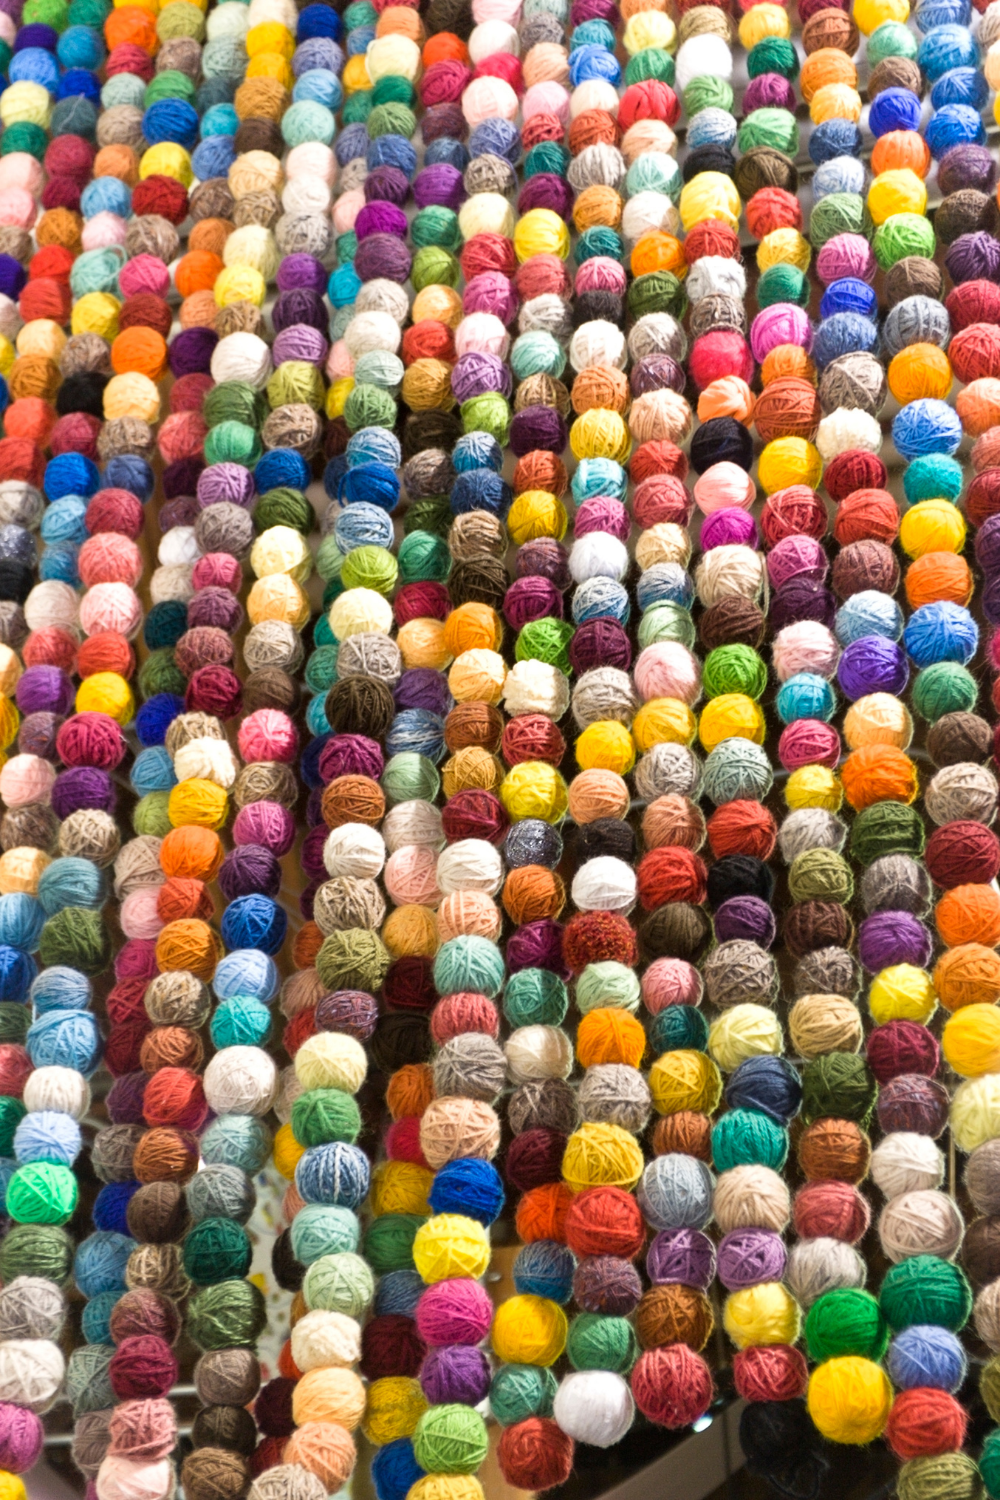 Find discontinued yarn